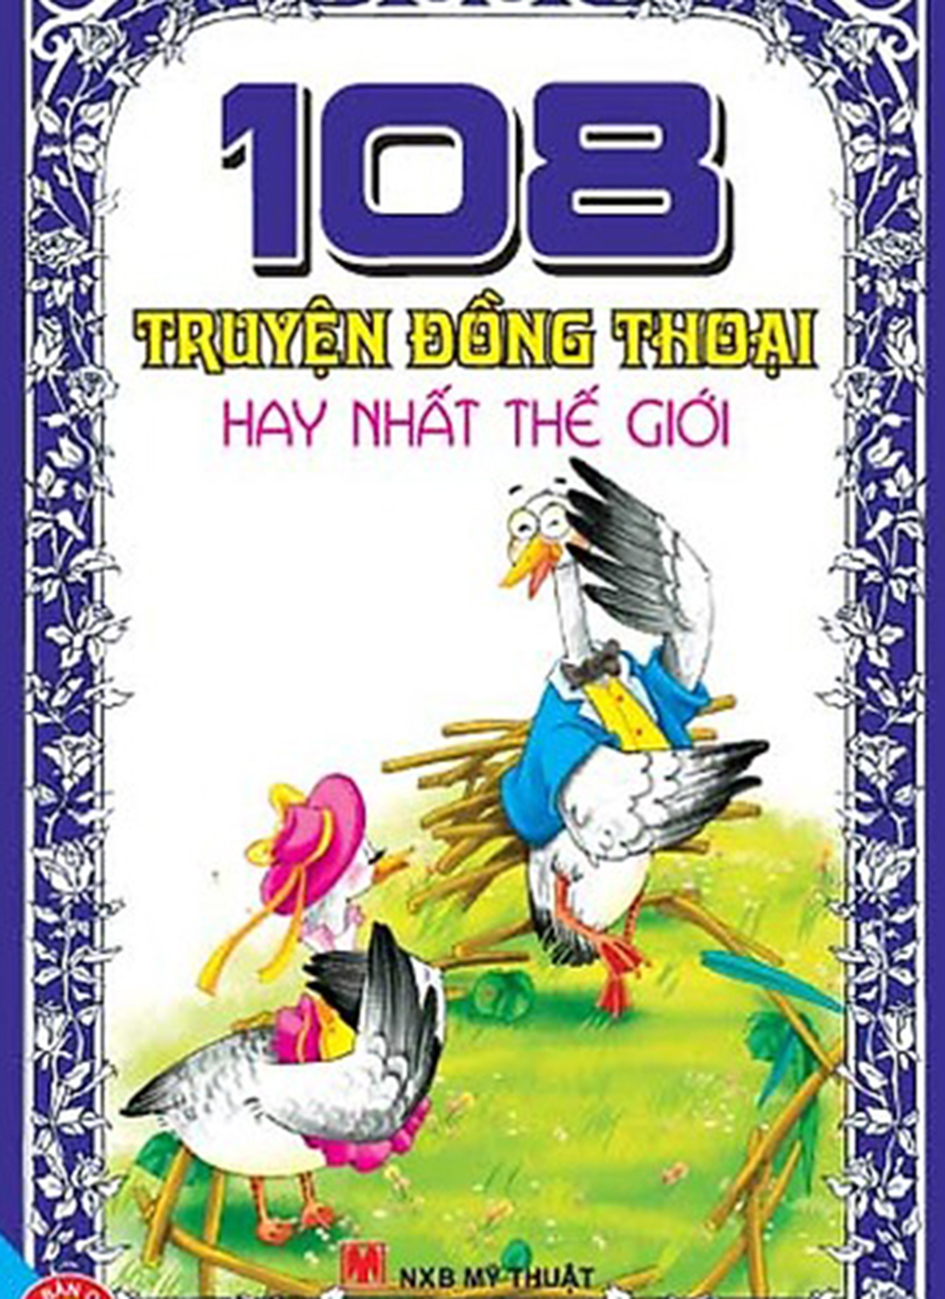 108 chuyen dong thoai hay nhat the gioi